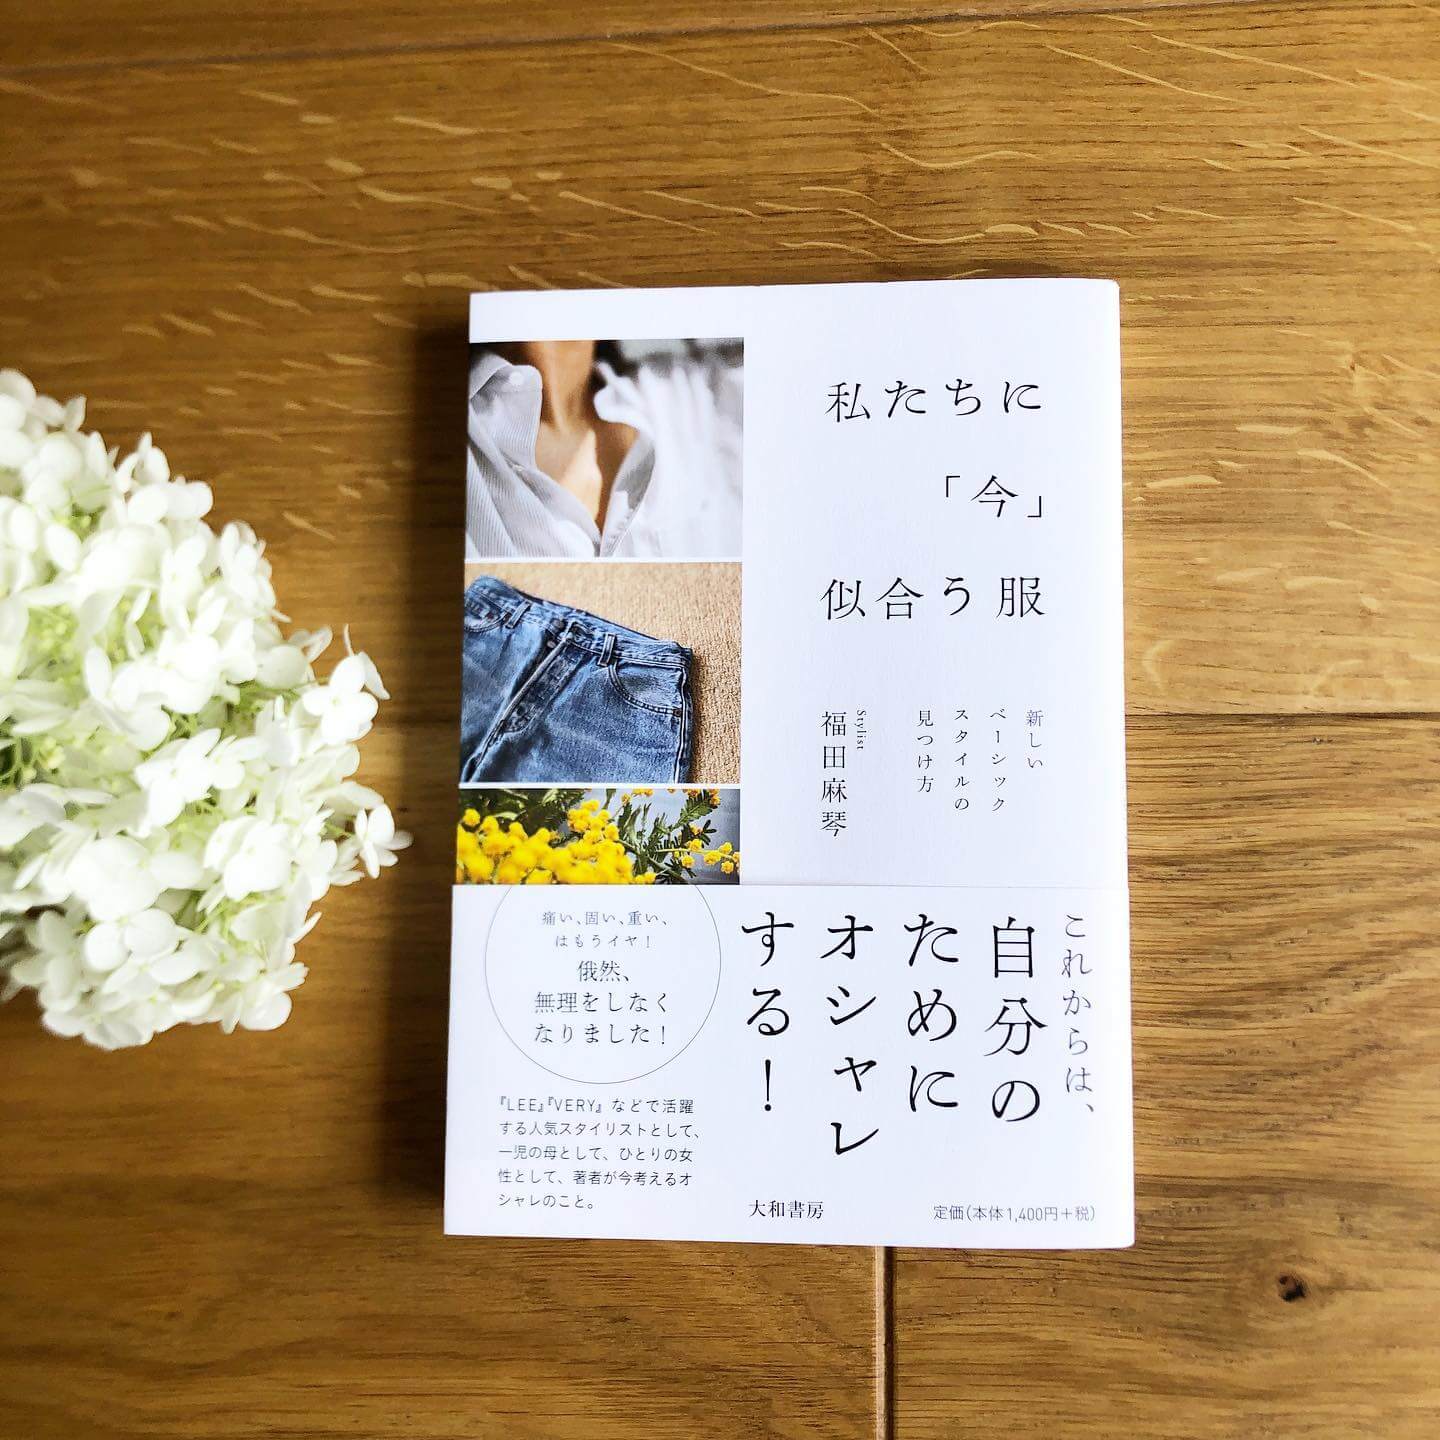 福田麻琴さんのエッセイ本「私たちに『今』似合う服」は、まるで女友達とおしゃべりしているような楽しさ！